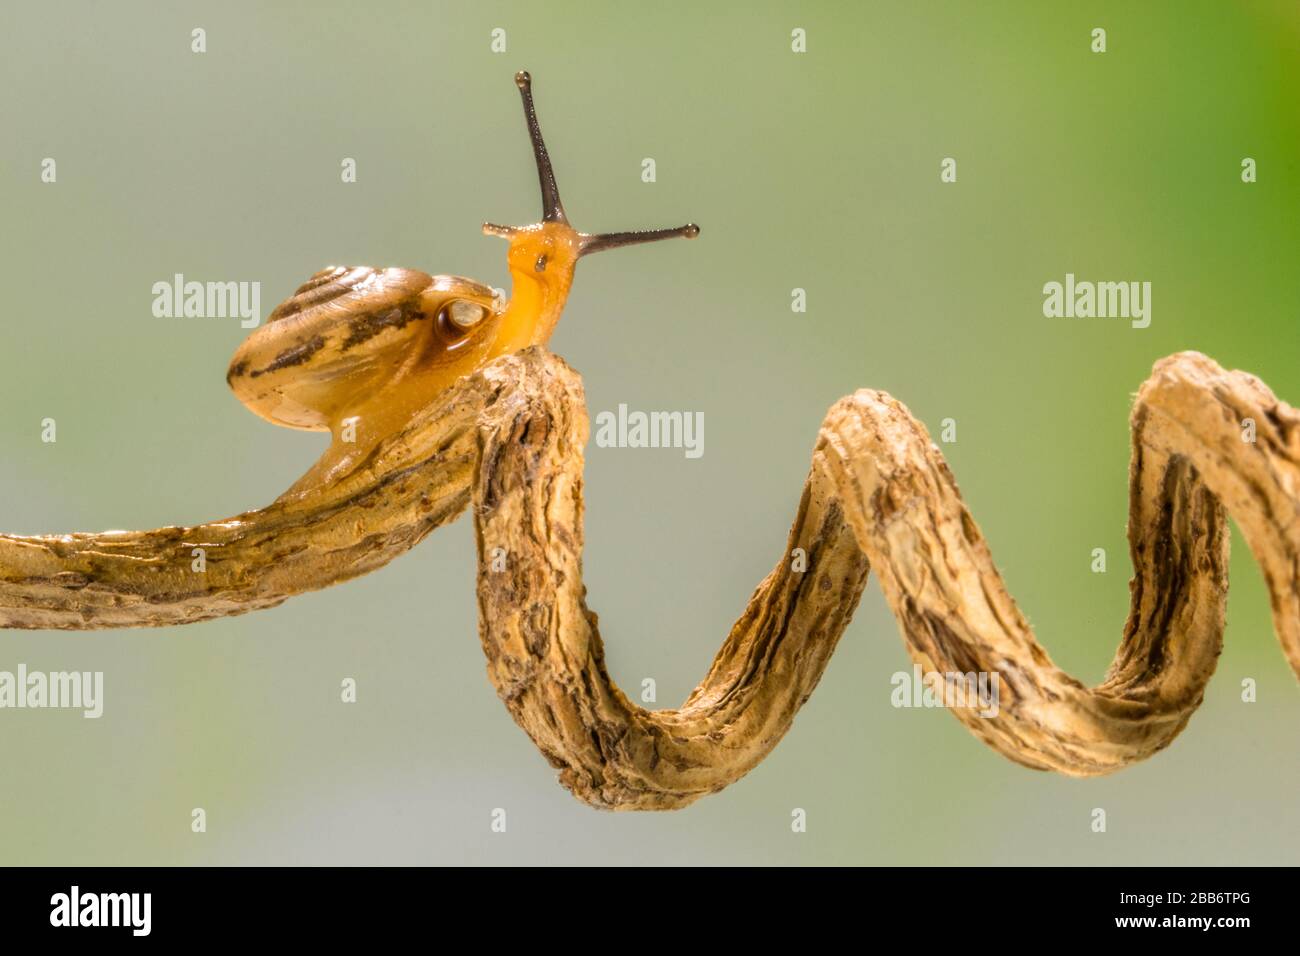 Gros plan d'un escargot sur une branche spiralée Banque D'Images